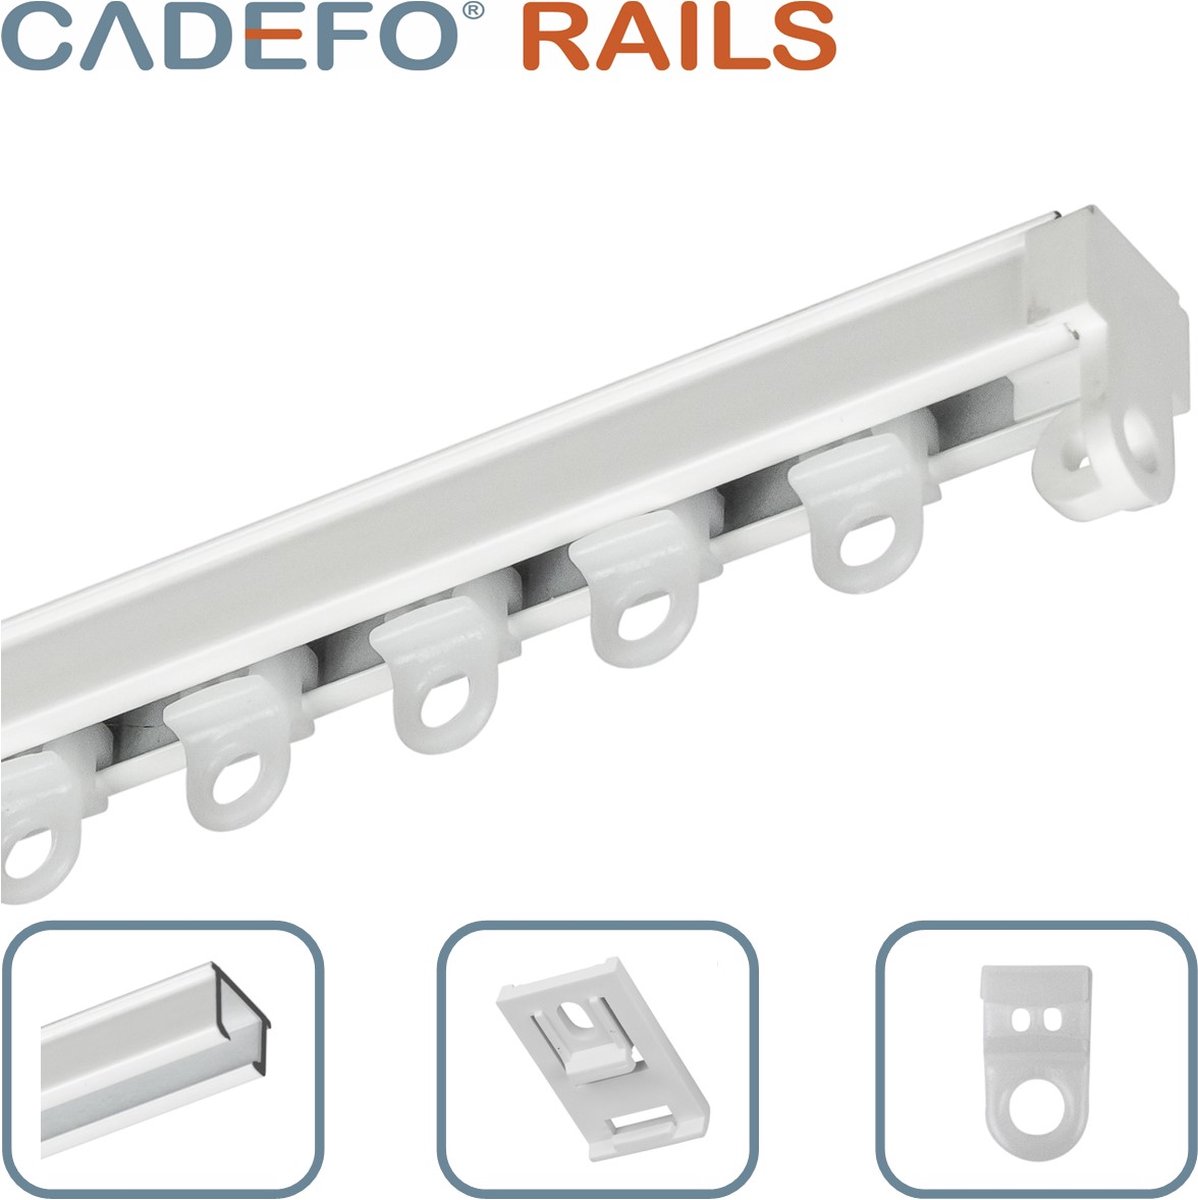 CADEFO RAILS (301 - 350 cm) Gordijnrails - Compleet op maat! - UIT 1 STUK - Leverbaar tot 6 meter - Plafondbevestiging - Lengte 317 cm